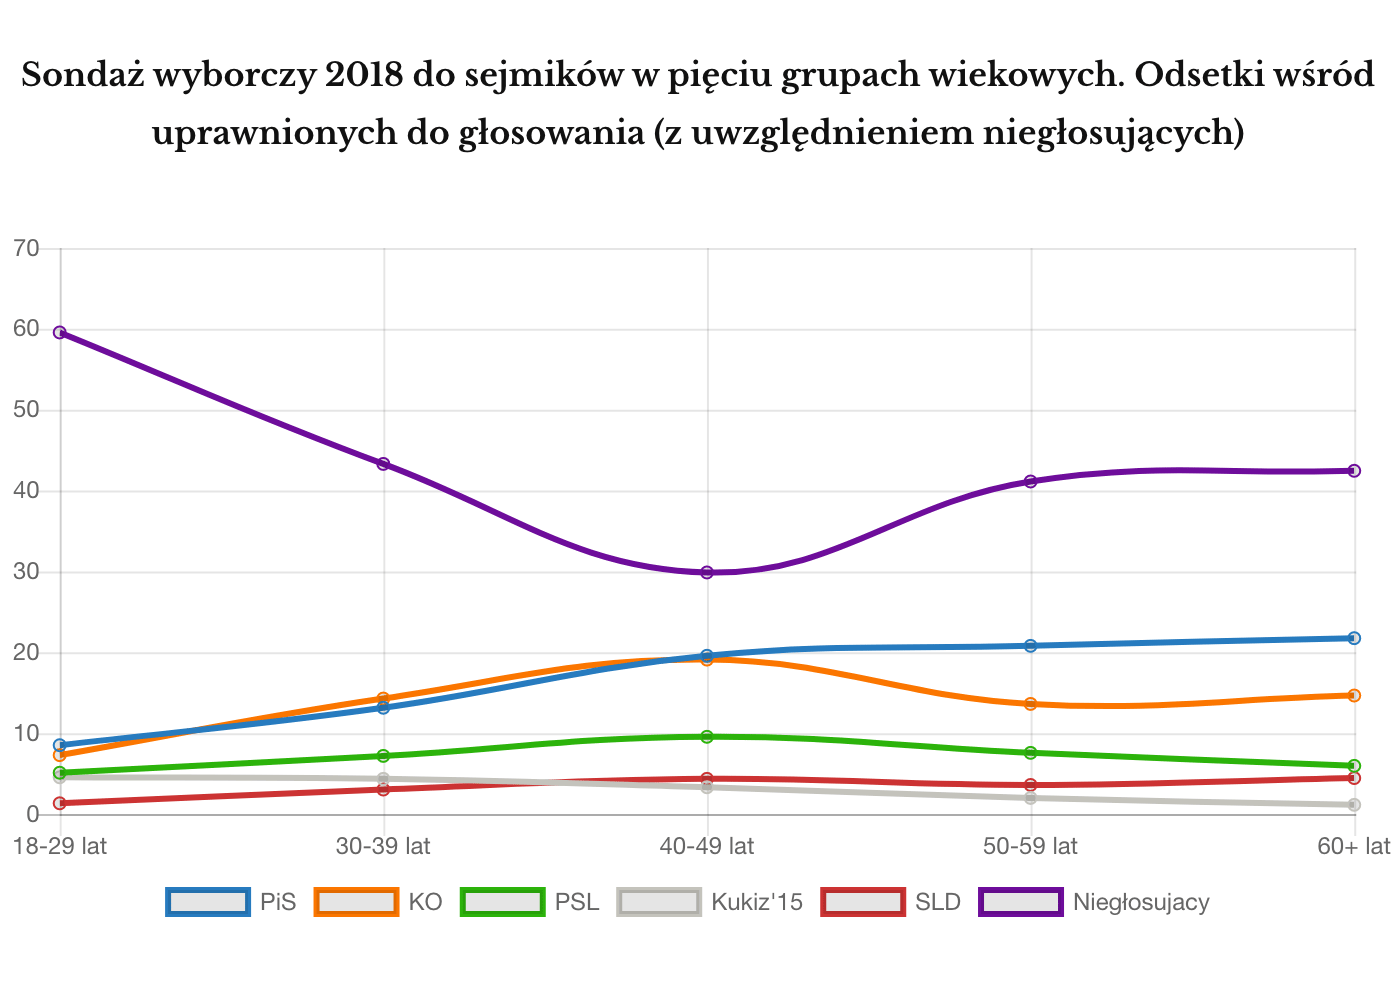 Wyniki wyborów samorządowych 2018 z podziałem na grupy wiekowe z uwzględnieniem niegłosujących